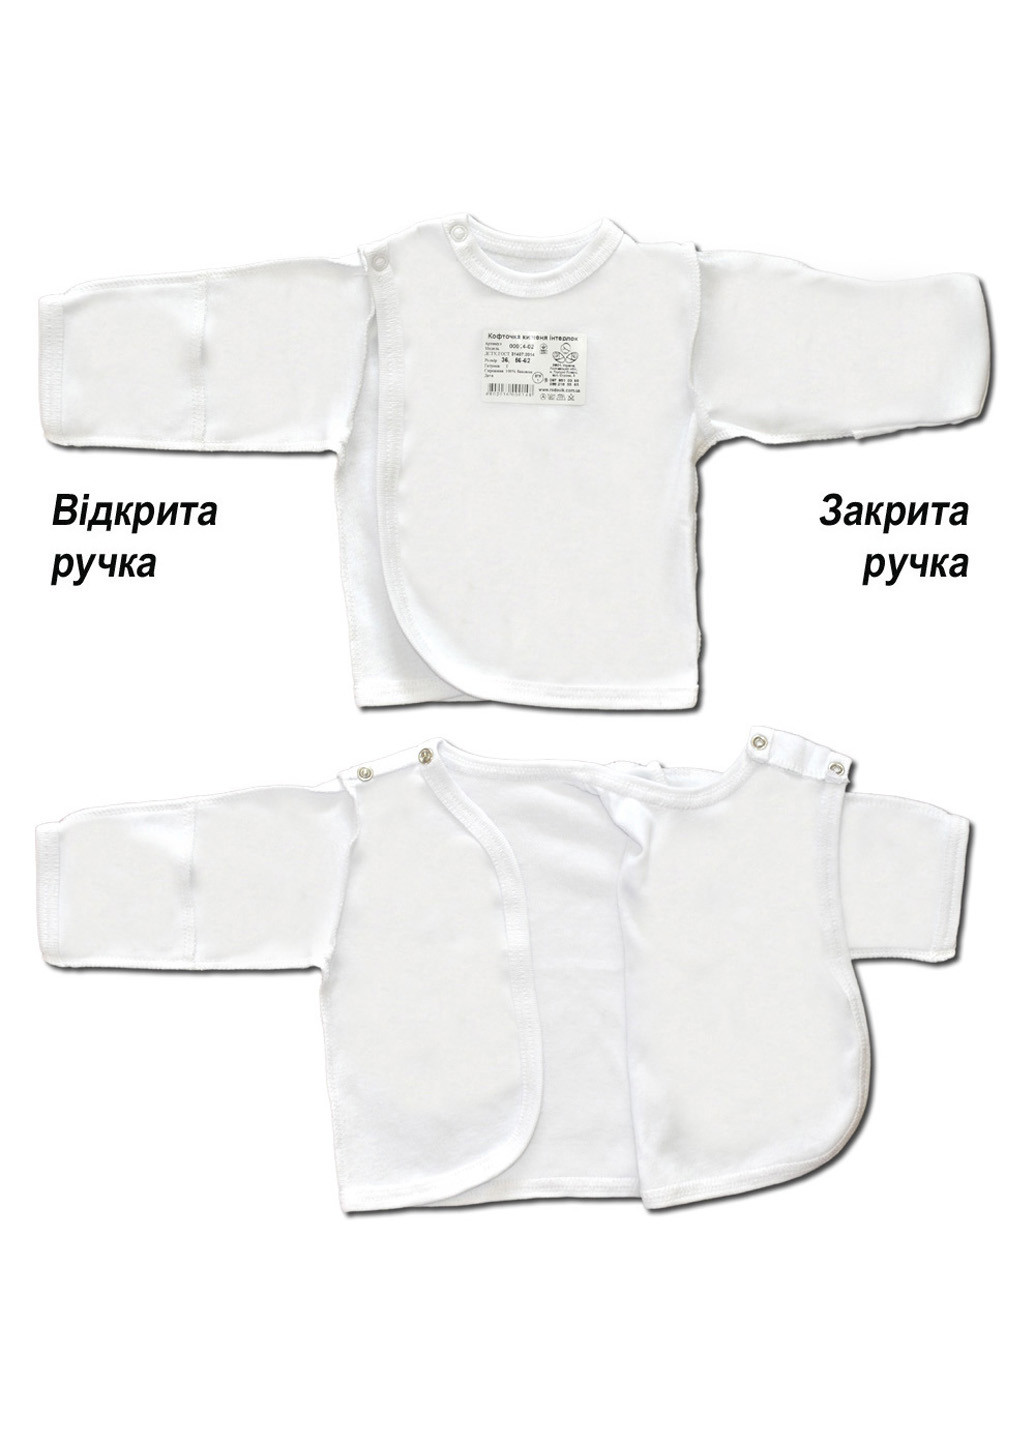 Белый демисезонный комплект одежды для малыша №5 (4 предмета) тм коллекция капитошка белый Родовик комплект БД-05